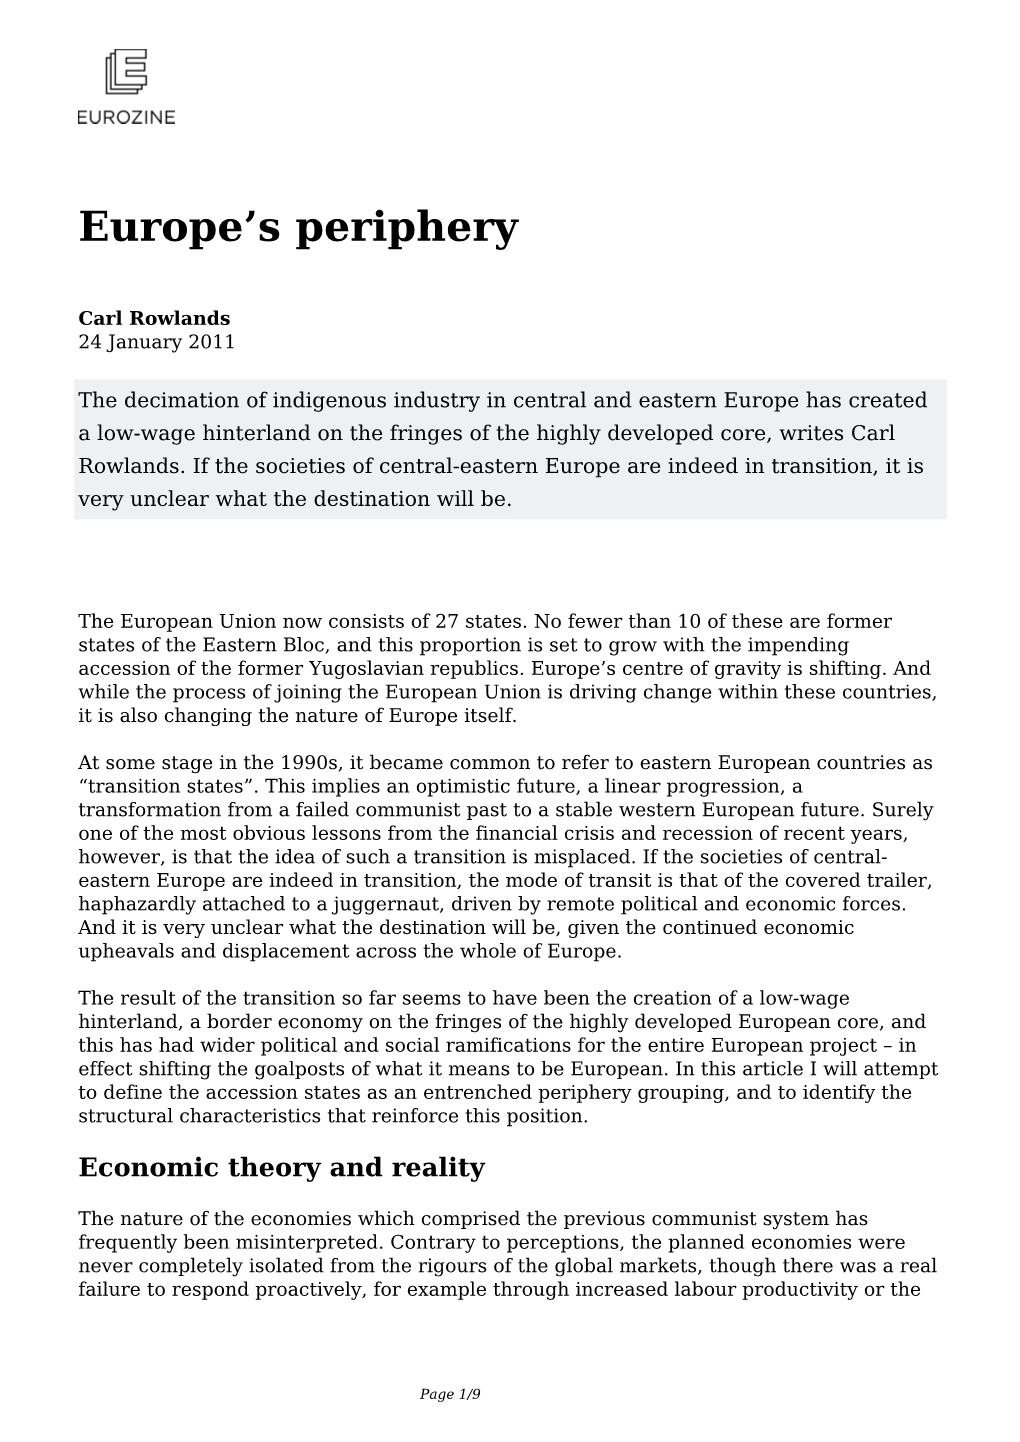 Europe's Periphery